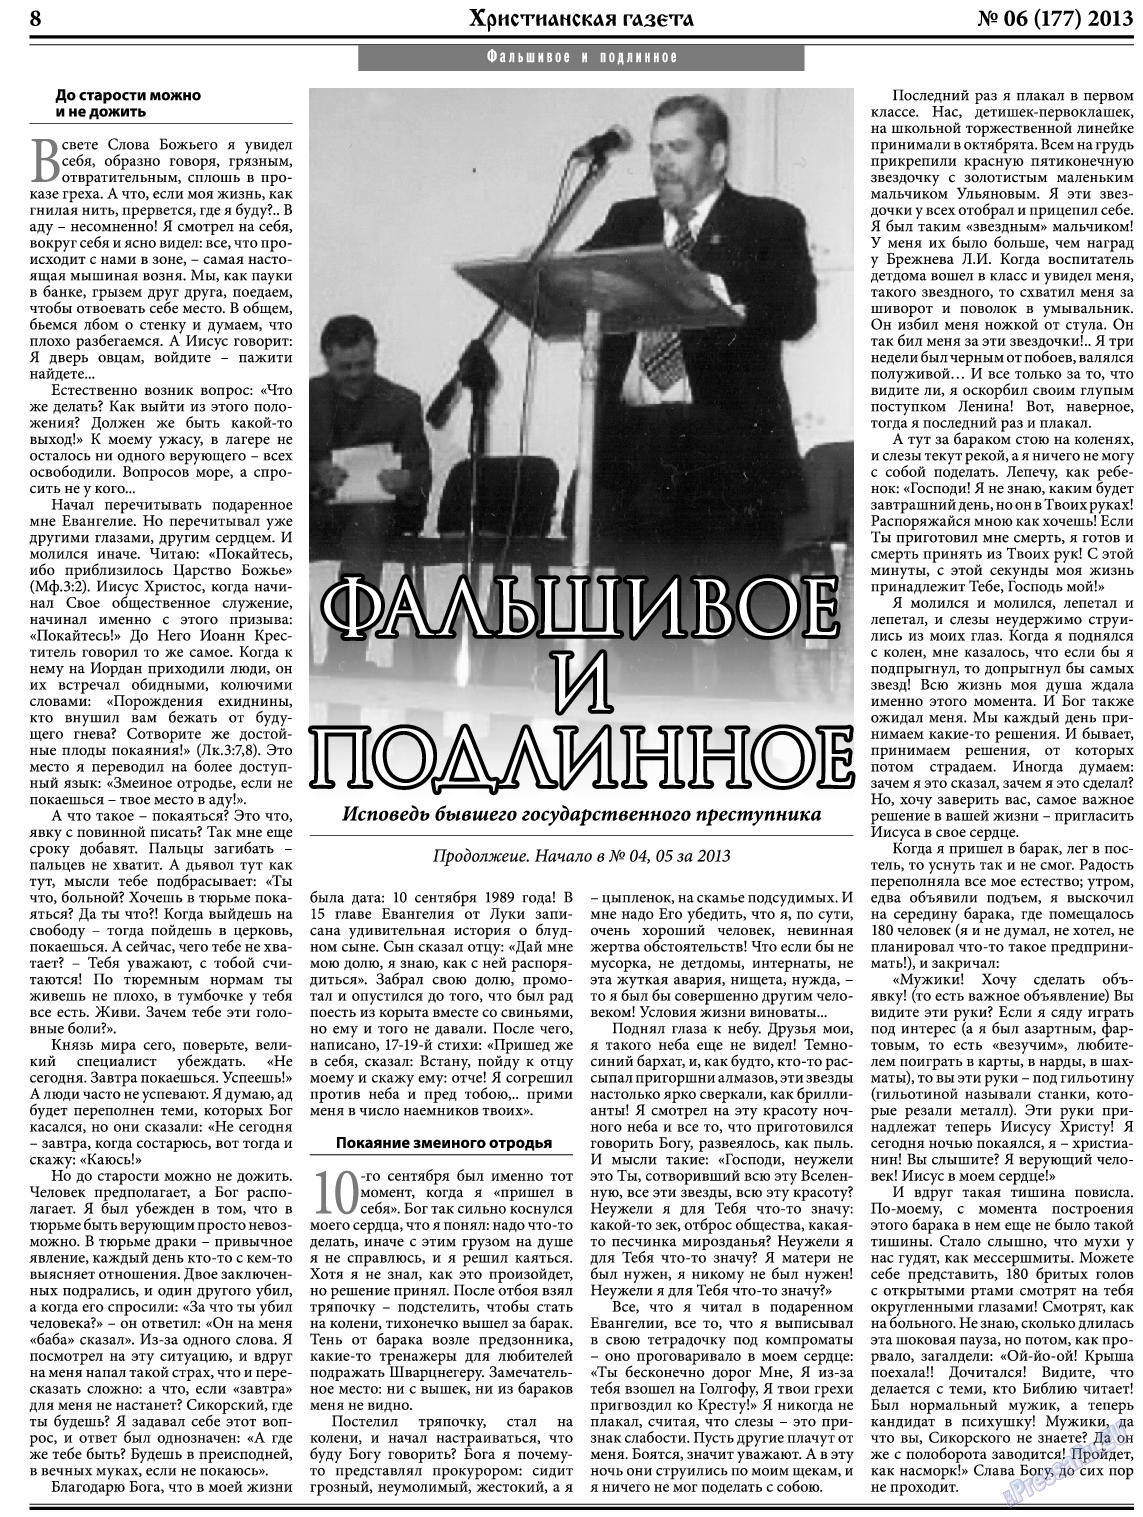 Христианская газета, газета. 2013 №6 стр.8